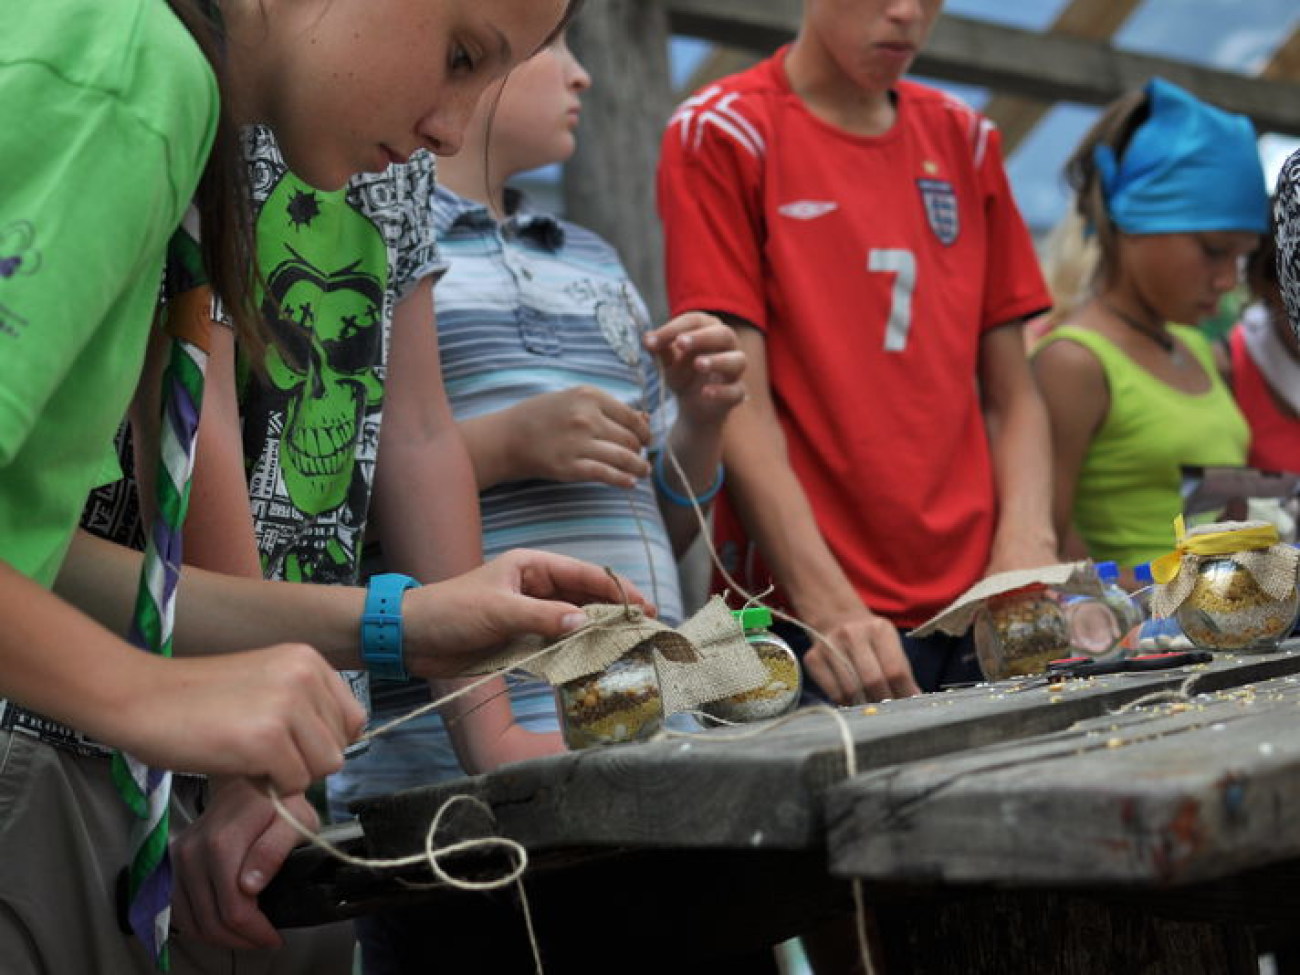 Пирогово устроило праздник для детей-беженцев, 7 августа 2014г.